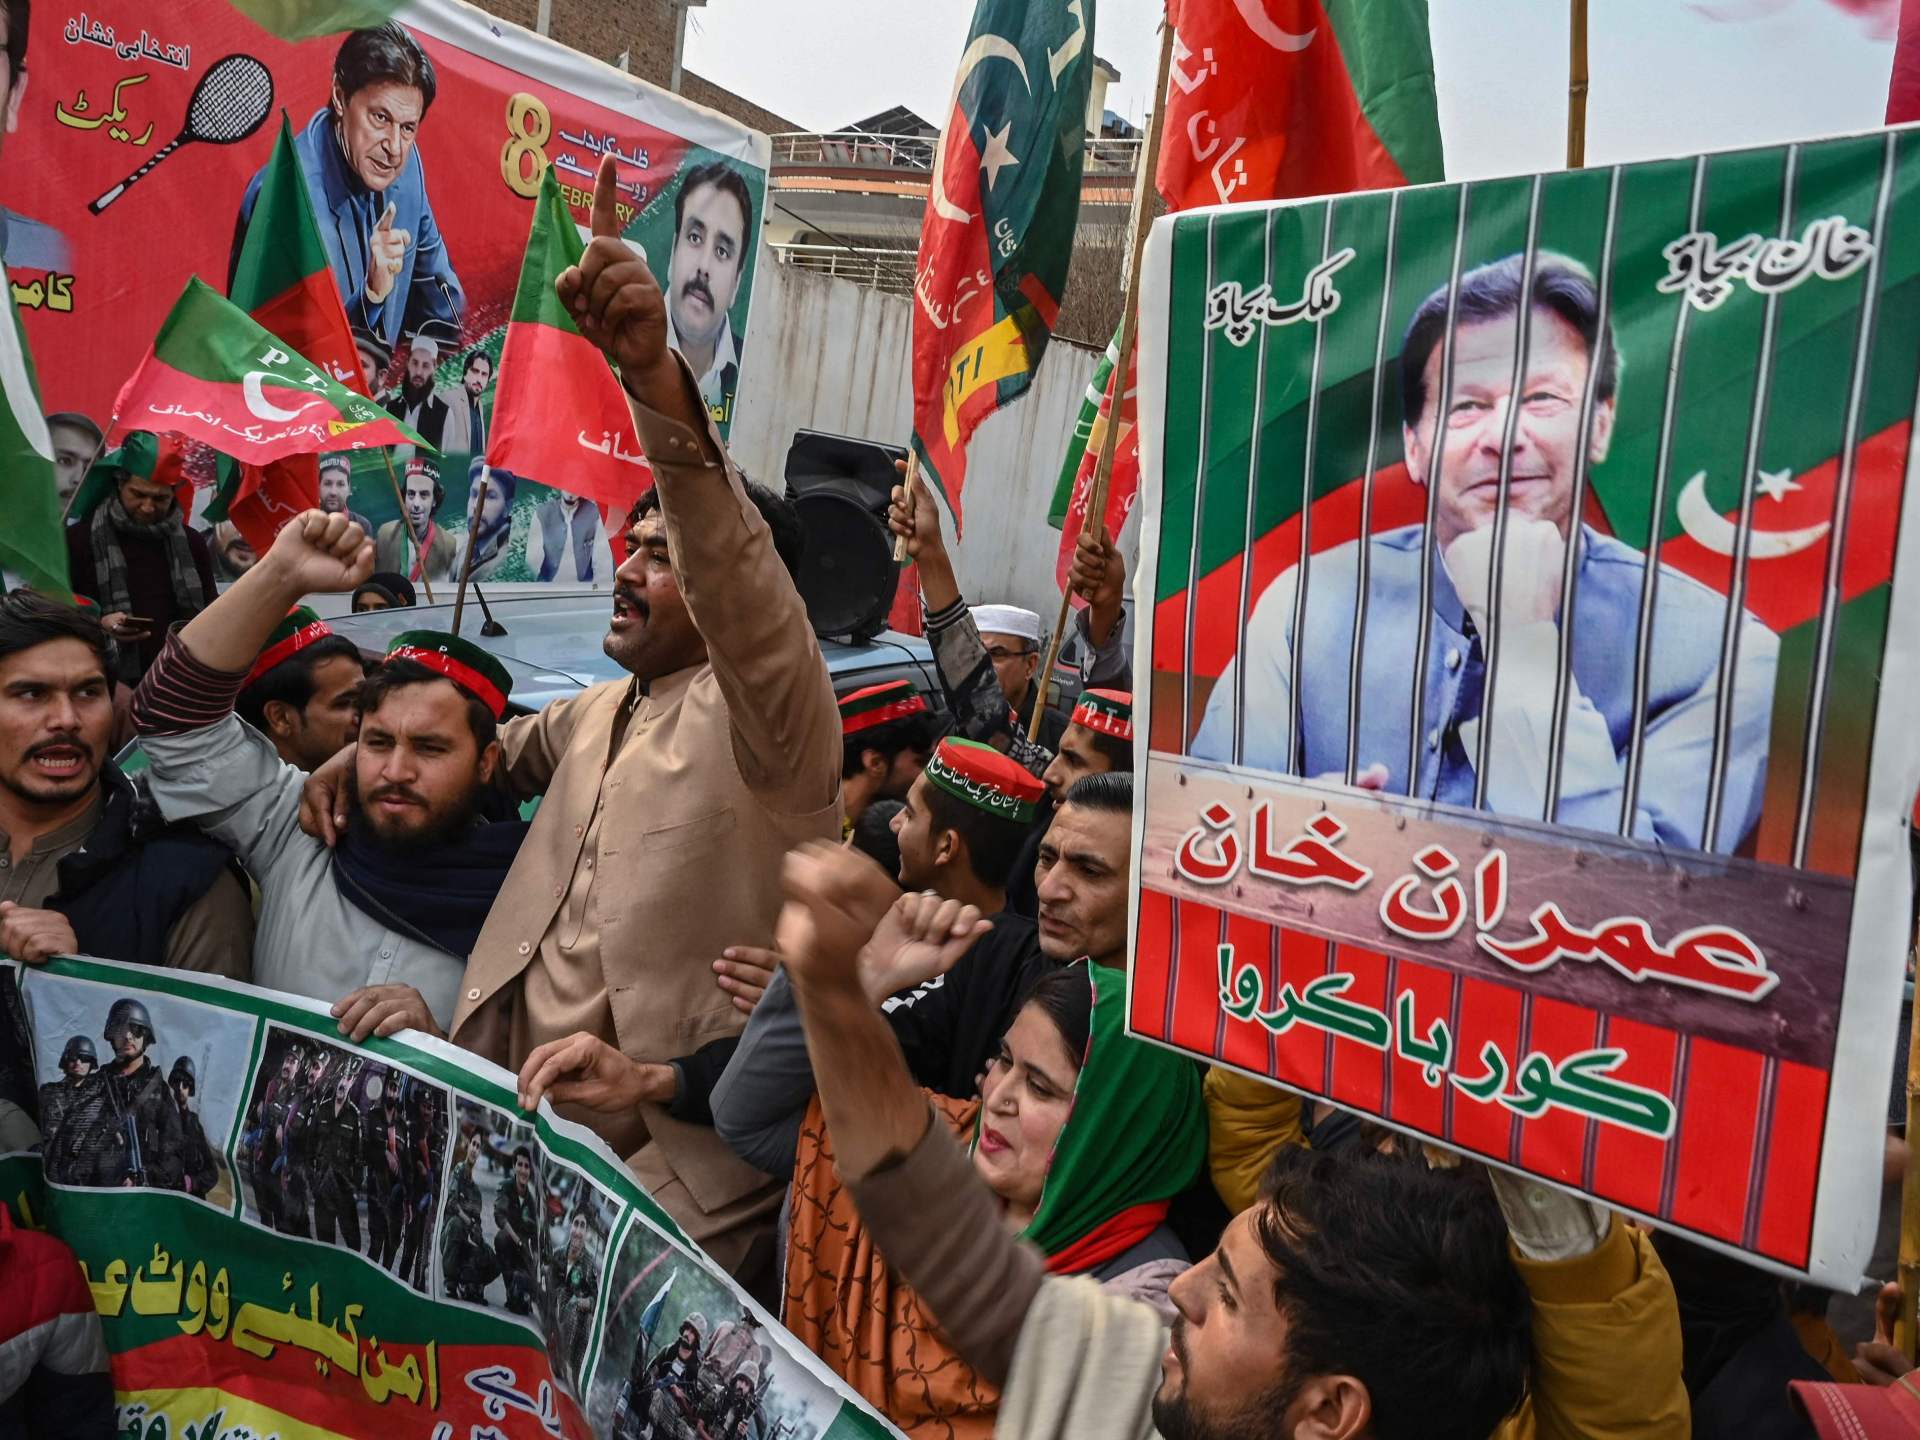 أنصار عمران خان يتصدرون انتخابات باكستان والجيش يدعو للقطيعة مع “الفوضى” | أخبار – البوكس نيوز